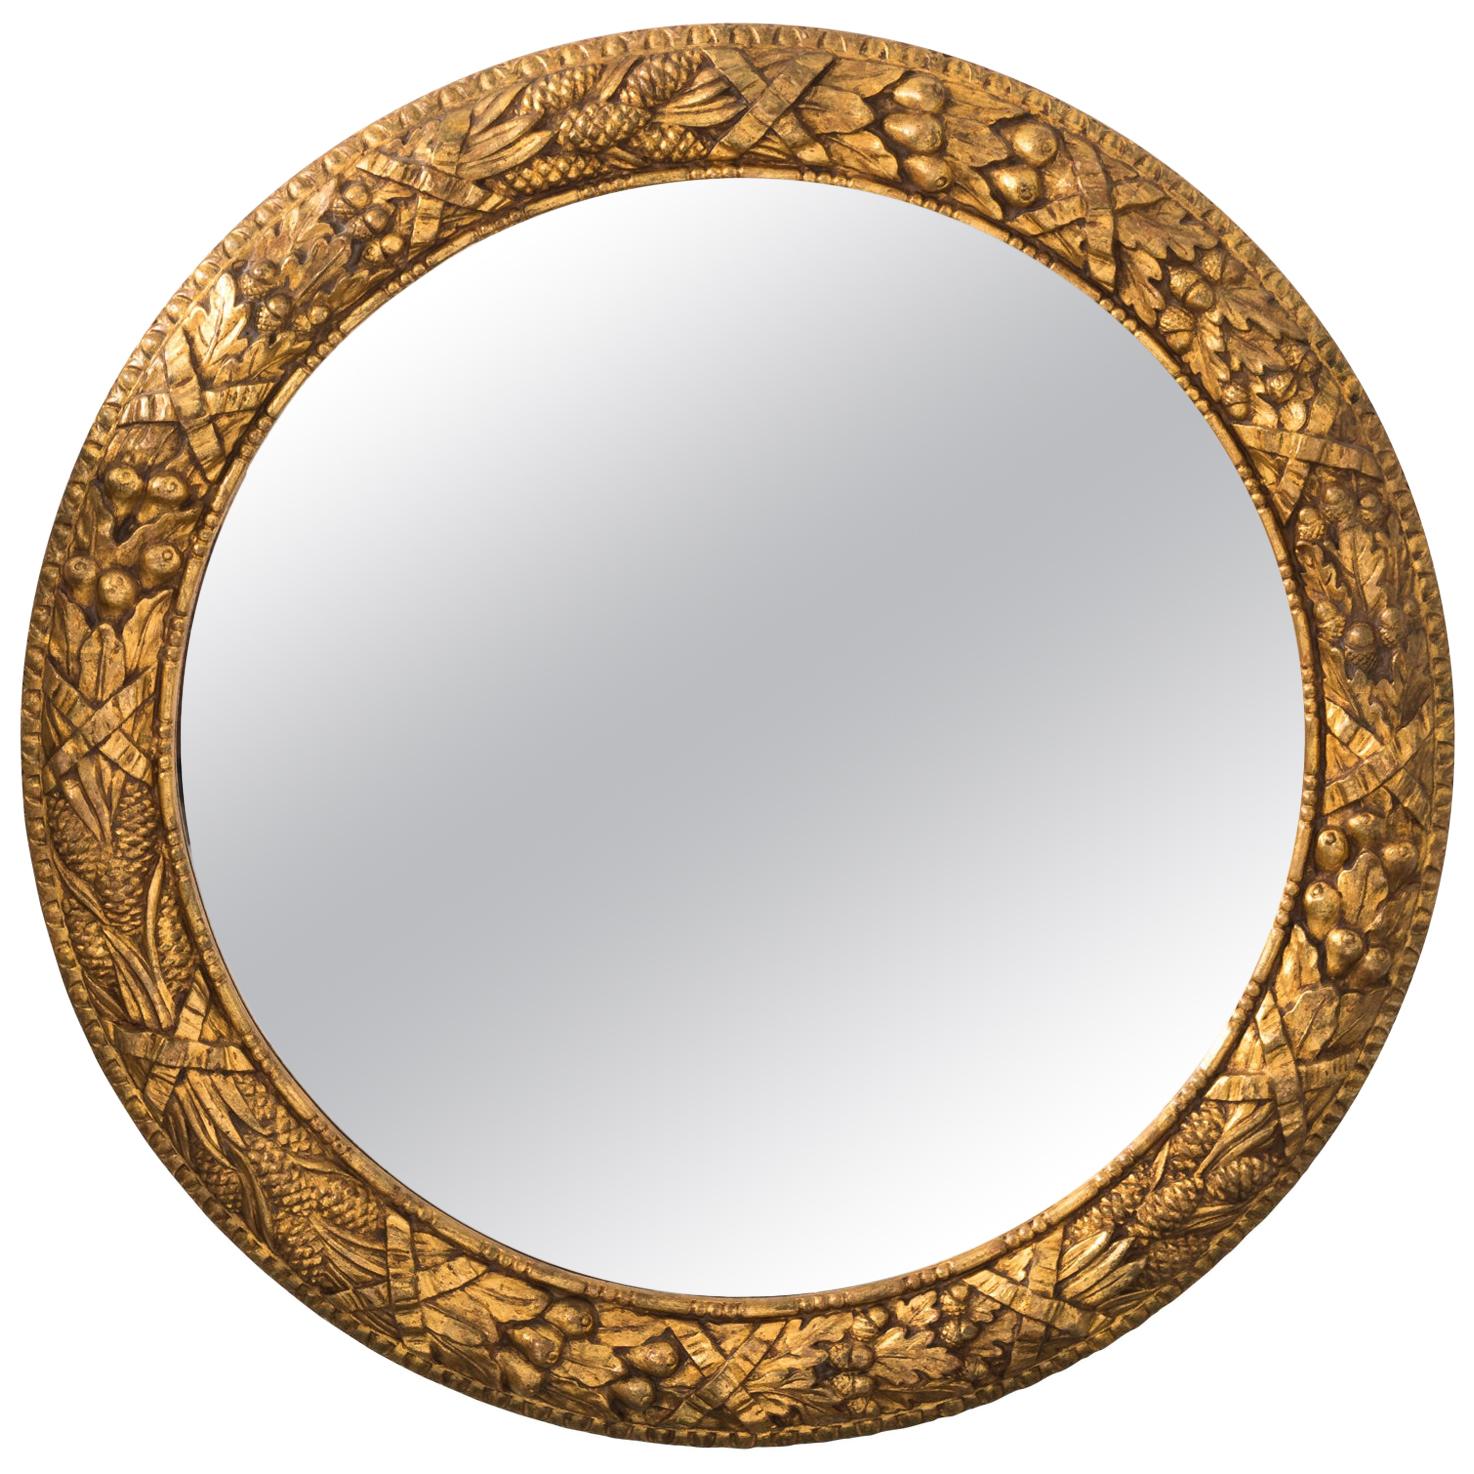 Round Gilt Wood Mirror 